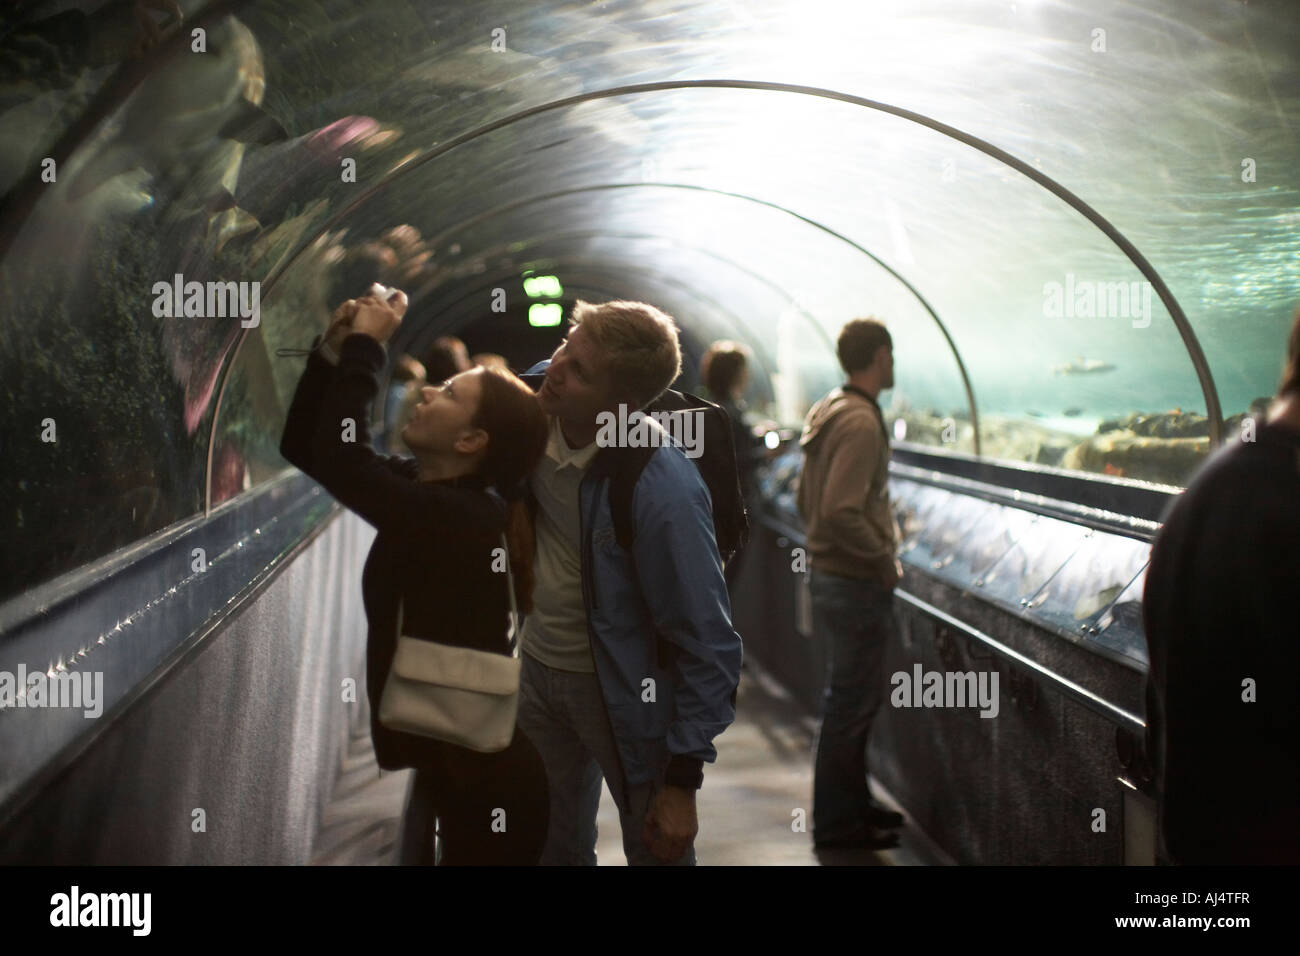 Menschen in Unterwasser anzeigen Tunnel Blick auf Haie und andere Fische in Sydney Aquarium Darling Harbour New South Wales NSW Aus Stockfoto